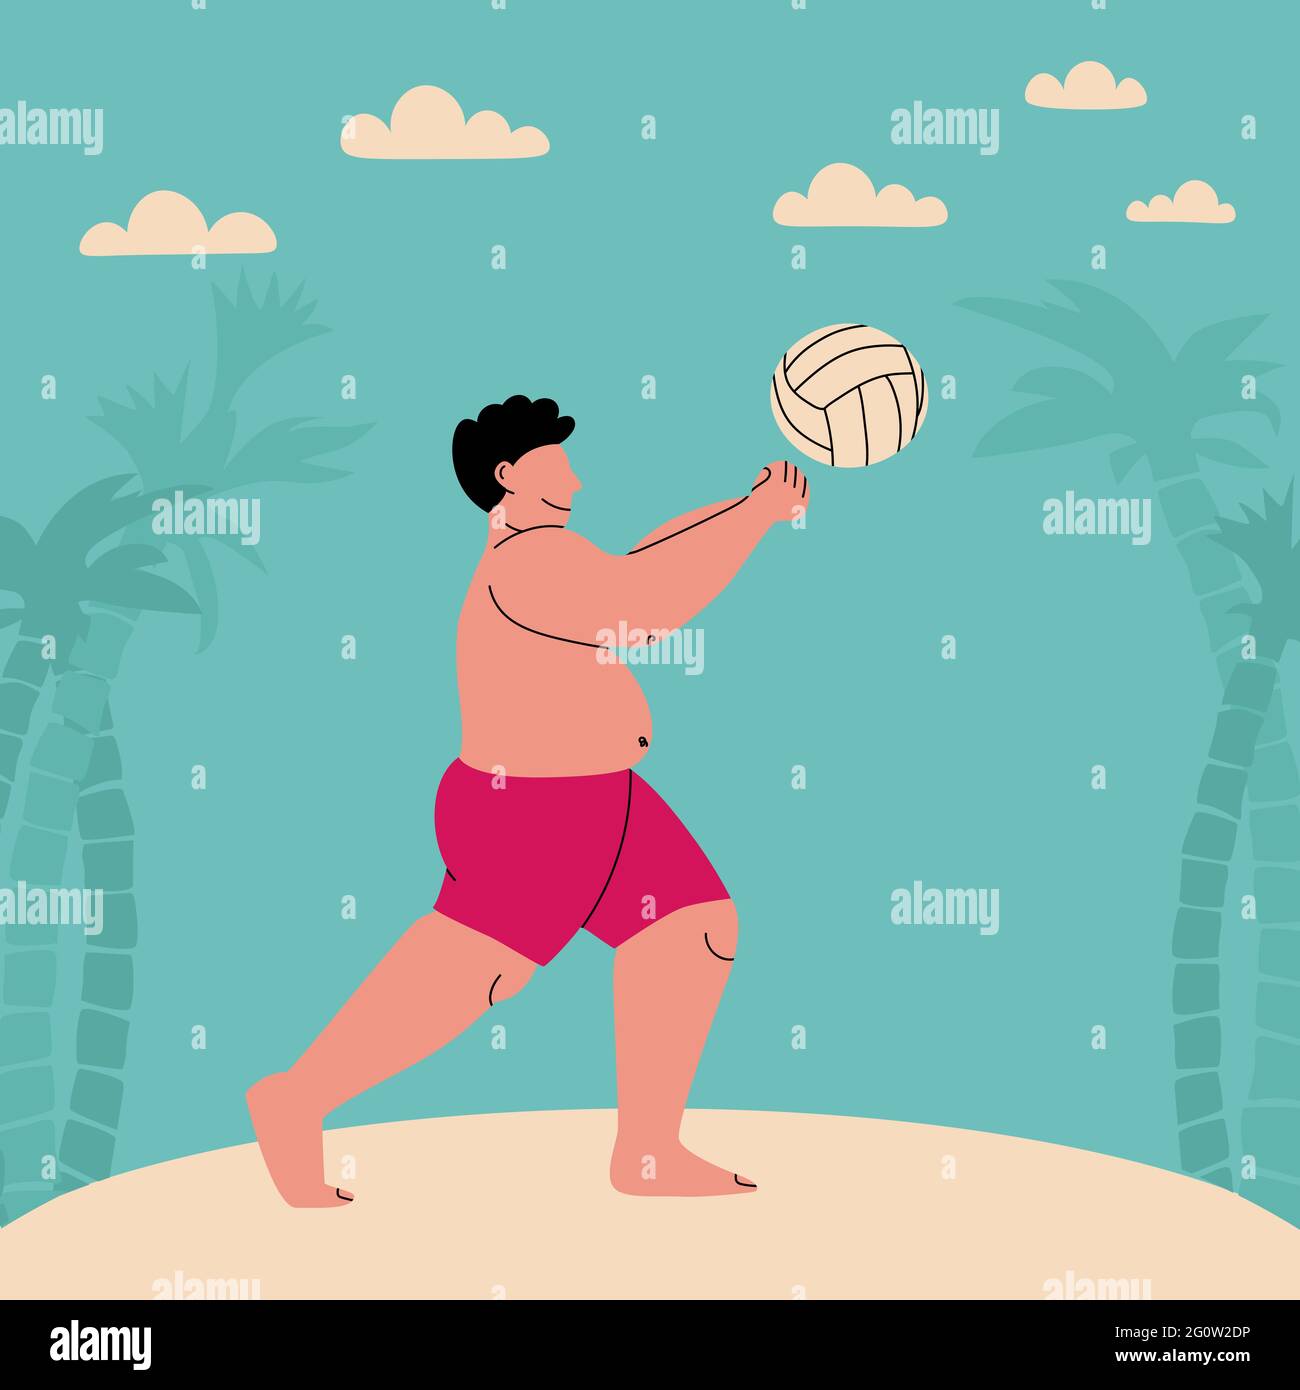 Plump Mann in Badehosen spielt Ball. Beachvolleyball. Lustige flache Vektorgrafik. Fetter Mann am Strand mit Palmen und Wolken. Großer Sport Stock Vektor